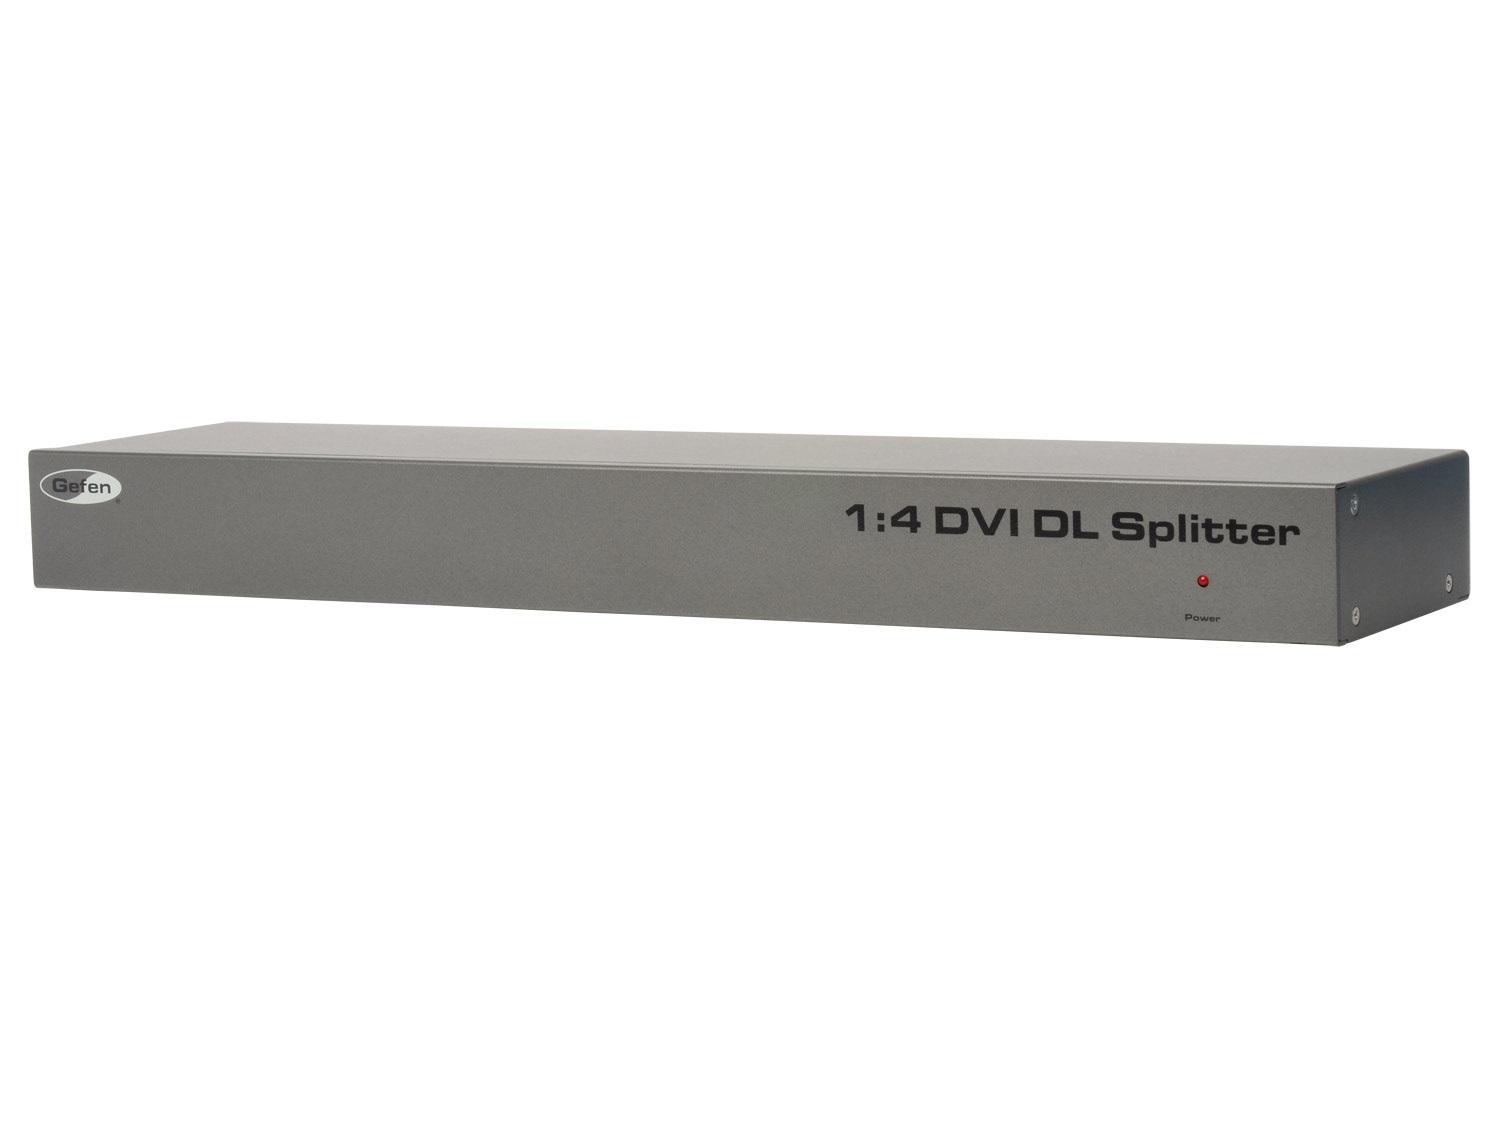 EXT-DVI-144DL 1x4 DVI Dual Link Splitter by Gefen